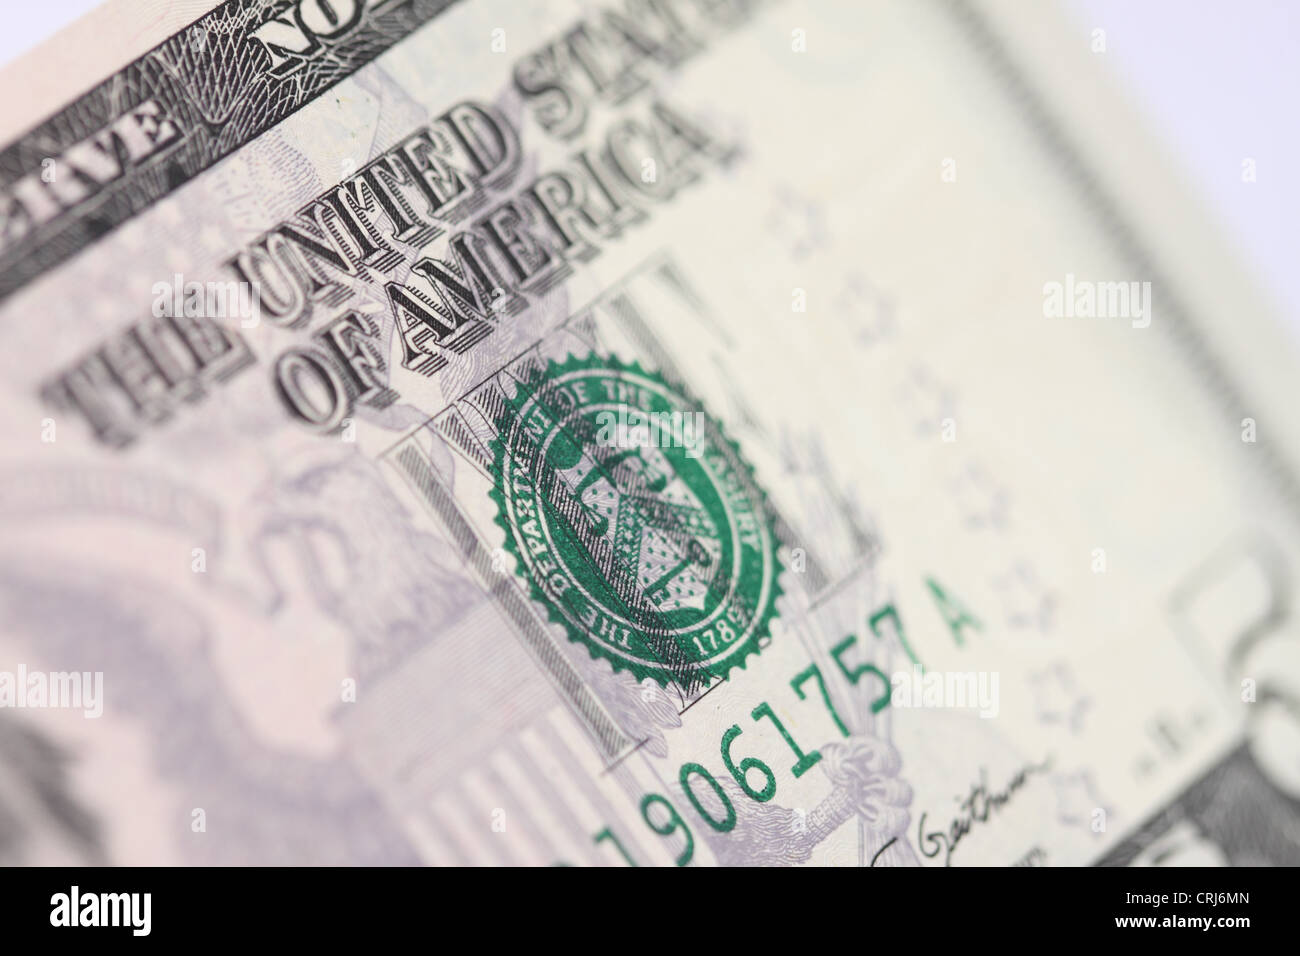 Noi il Dipartimento del Tesoro logo sul dollaro americano Bill nota Foto Stock